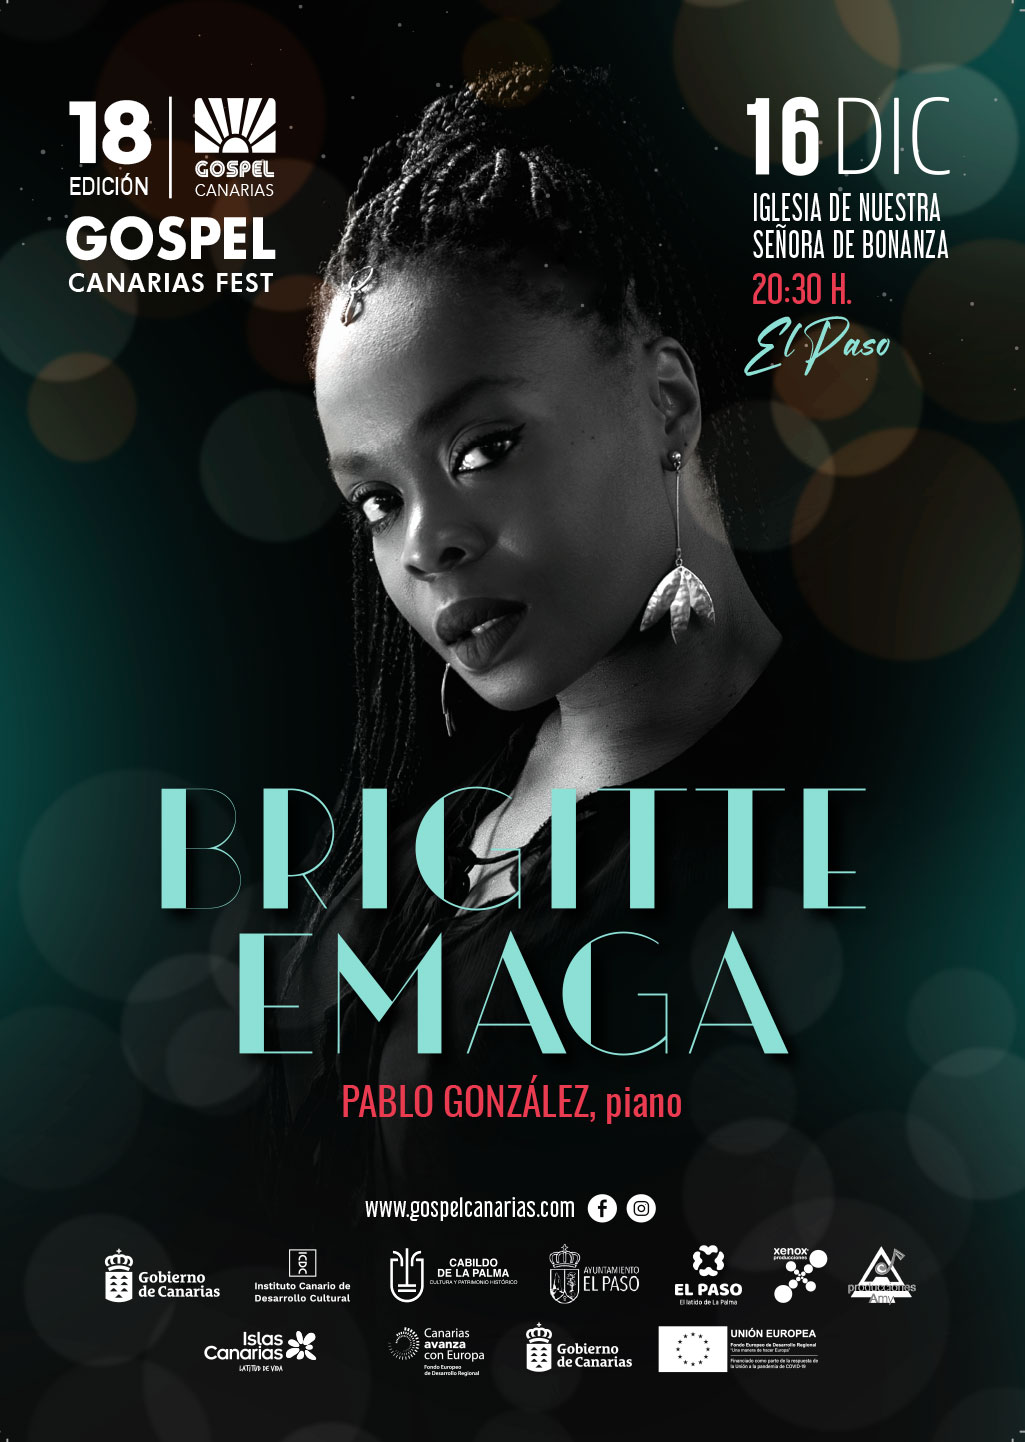 Concierto de Brigitte Emaga. Gospel Canarias Fest